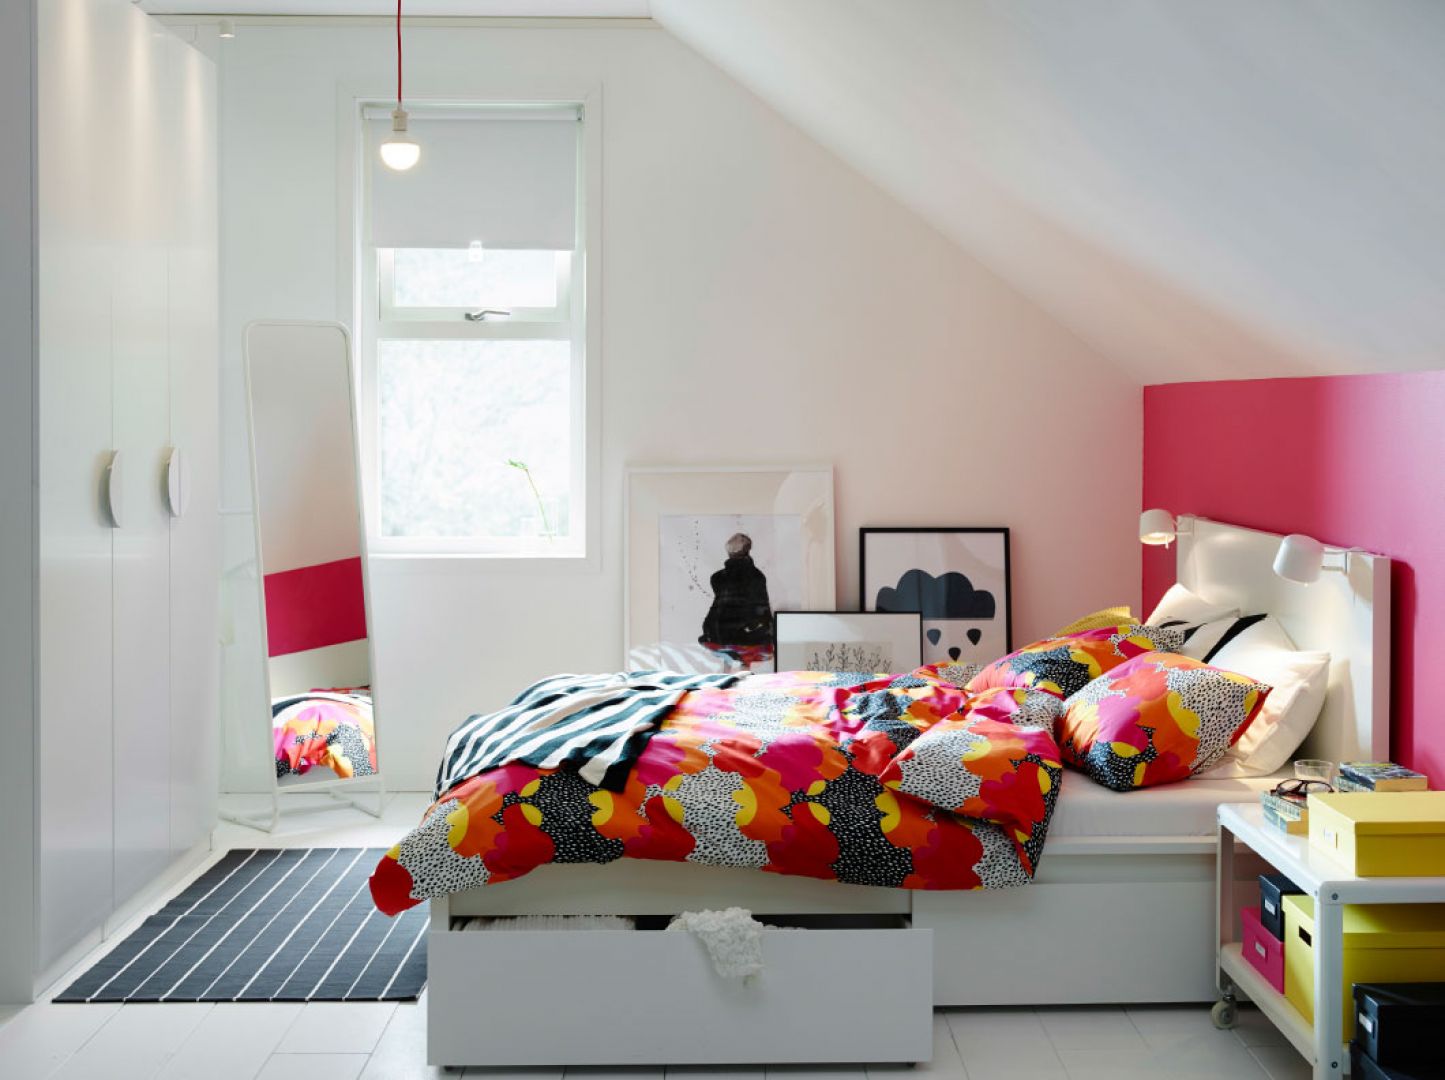 Skośny sufit dodaje przytulności sypialni. Fot. IKEA